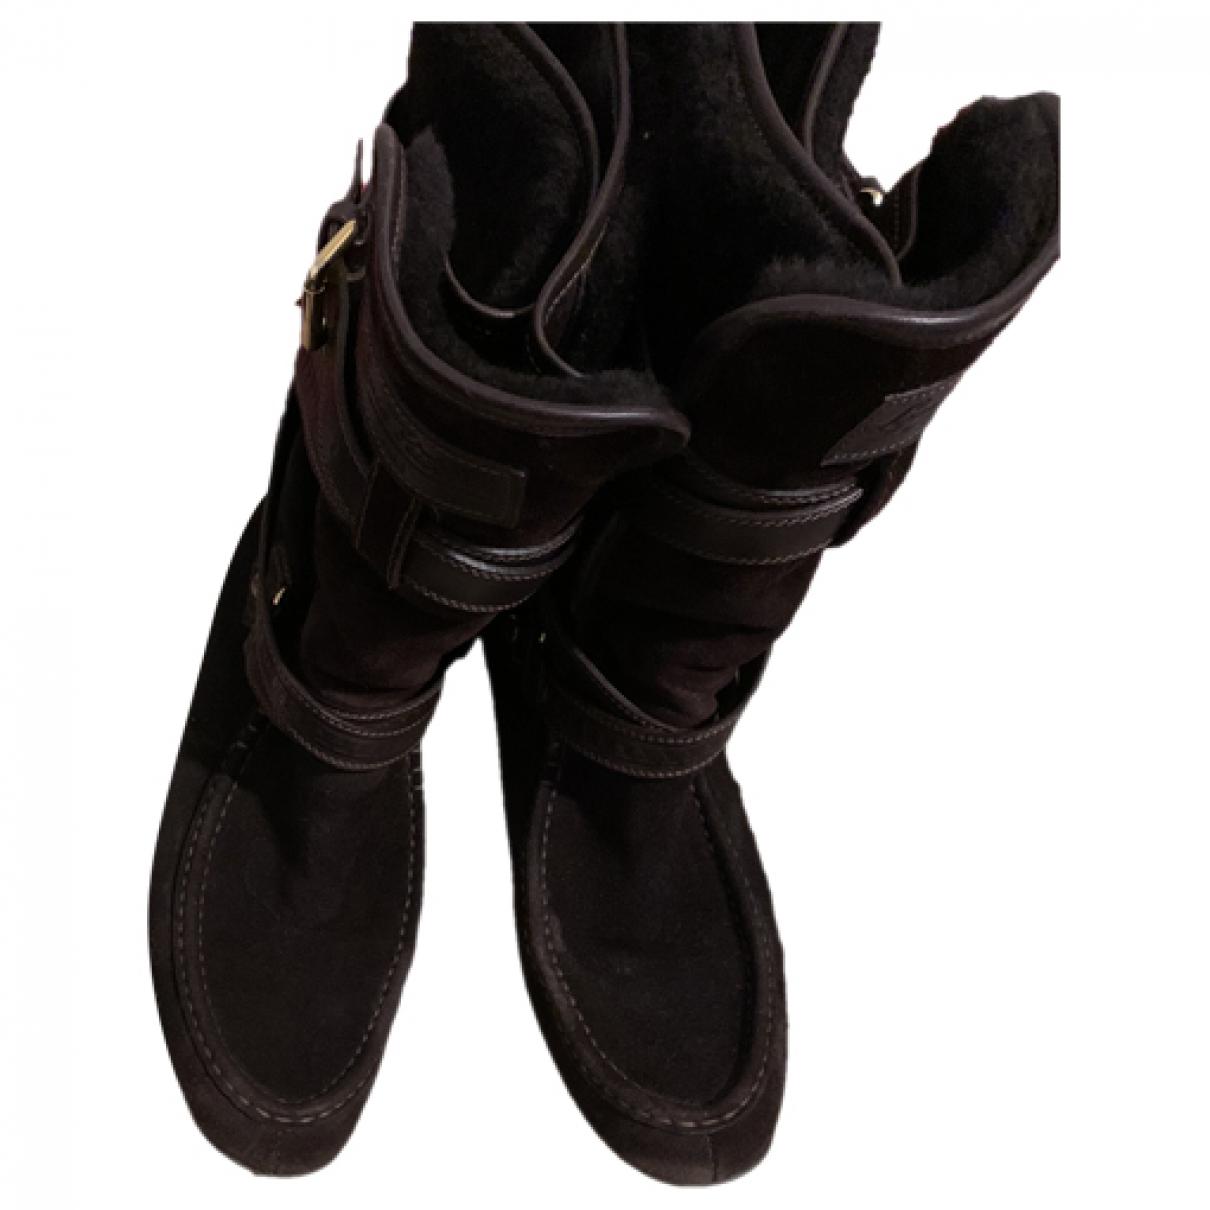 Louis Vuitton Black Leather and Monogram Canvas Faux Fur Lined Snow Boots Size EU 38/US 8 DOLORXDE 144010009196